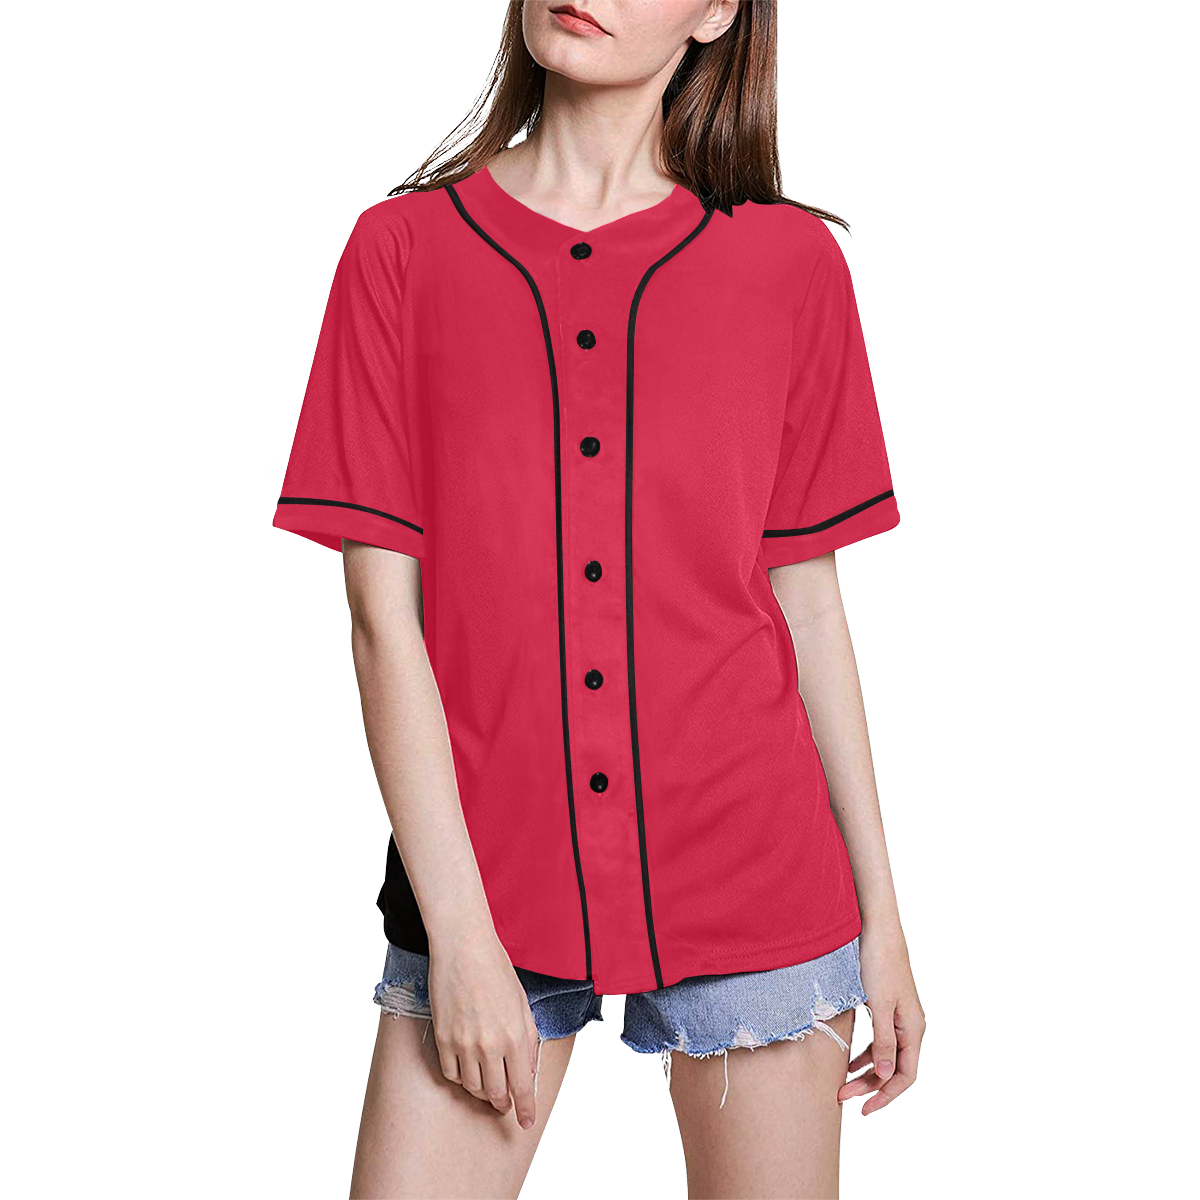 color crimson All Over Print Baseball Jersey for Women (Model T50)